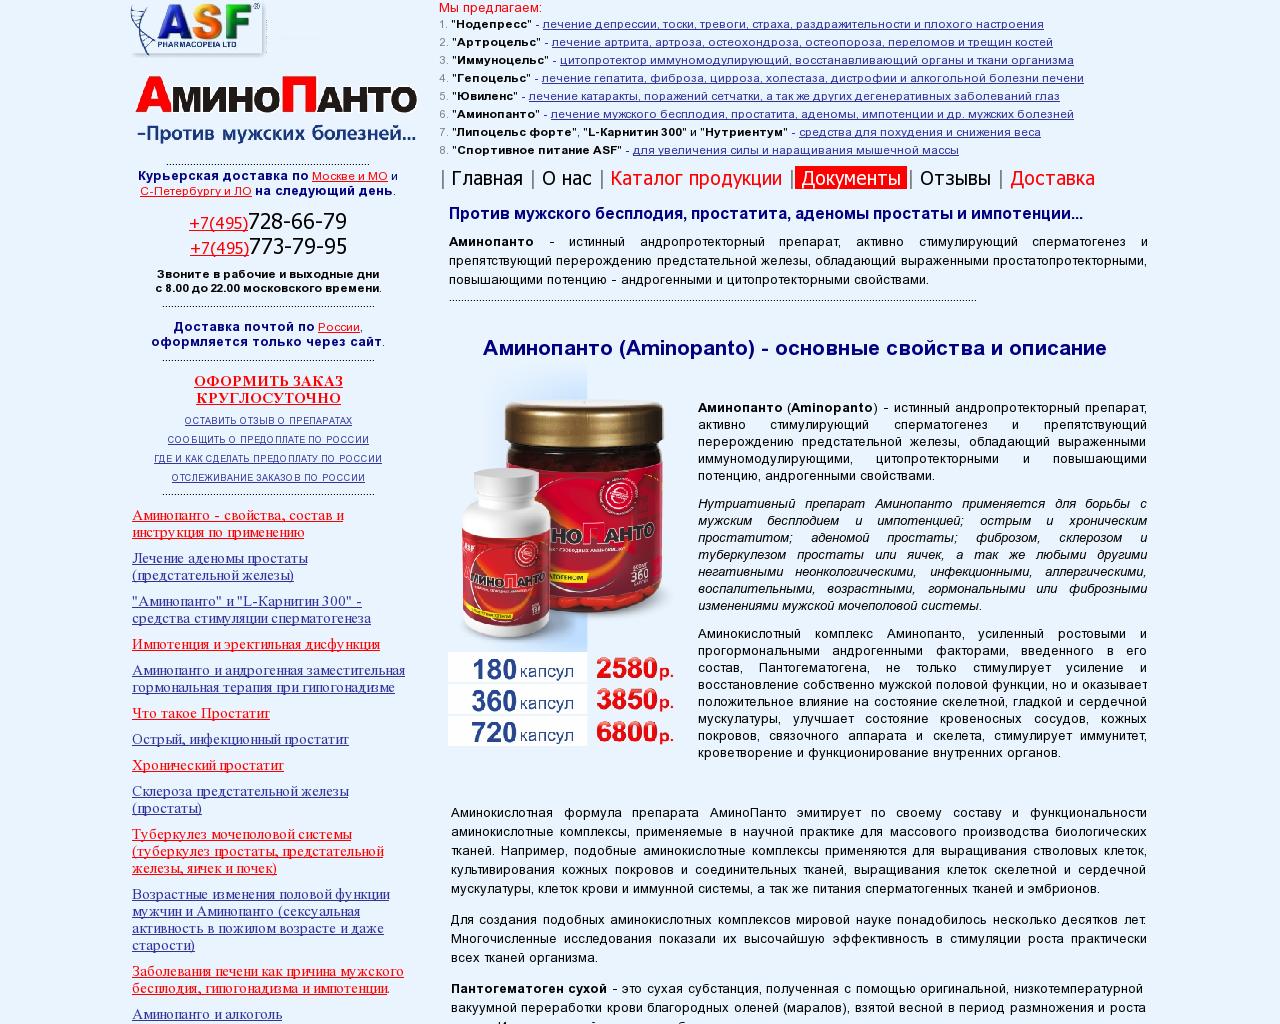 Изображение сайта aminopanto.ru в разрешении 1280x1024